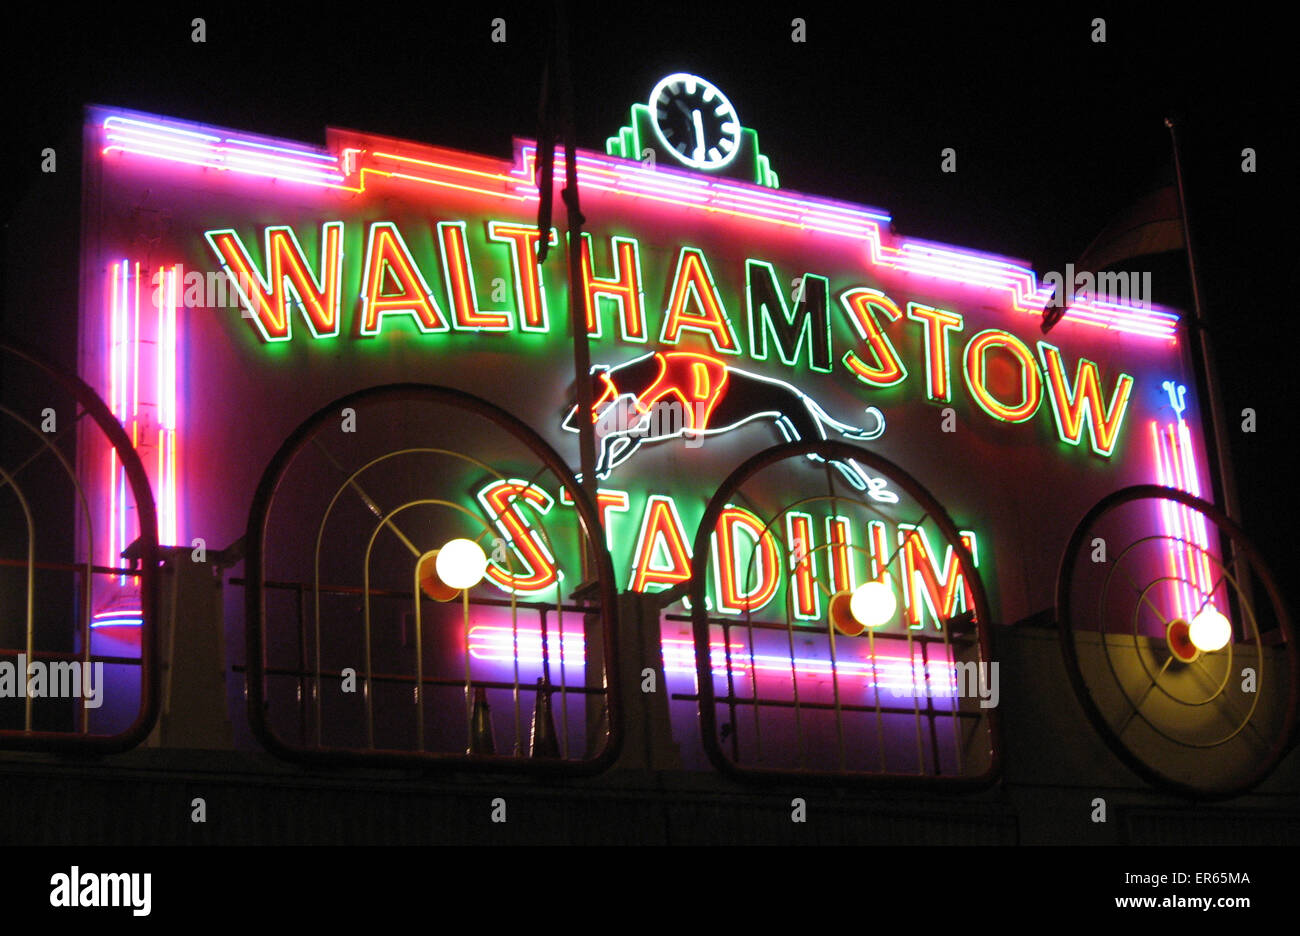 Berühmt für seine Windhund-Rennstrecke, Walthamstow Stadium in 1933 eröffnet. Mit einer unverwechselbaren rosa und grün neonbeleuchteten Fassade wurde das Stadion eines der bekanntesten Wahrzeichen der Hauptstadt. Sinkende Gewinne und Anwesenheiten zwang die Chandler-Familie Stockfoto